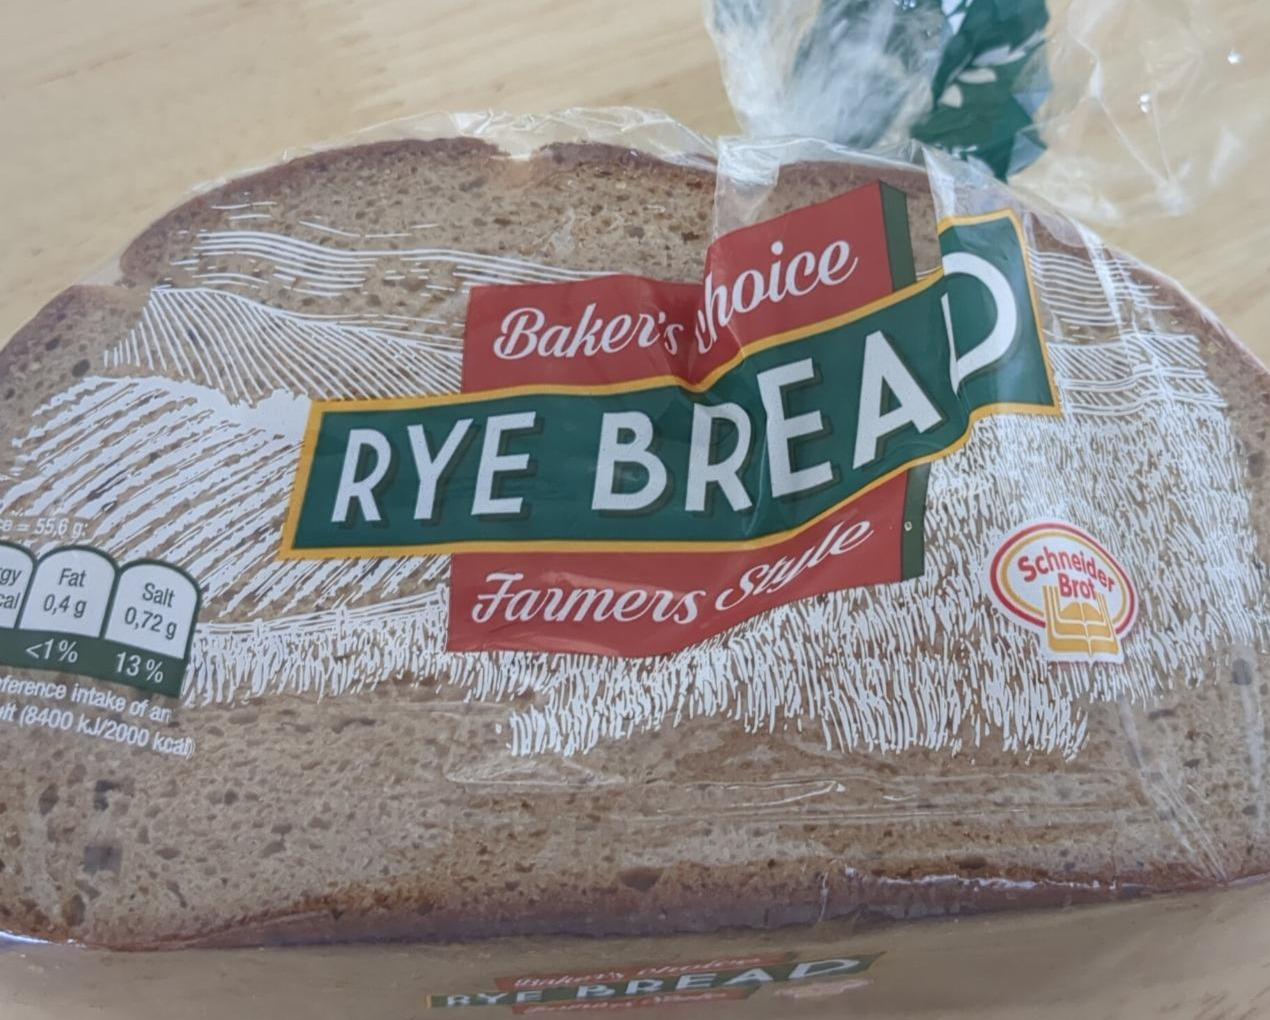 Fotografie - Rye Bread Bakers Choice